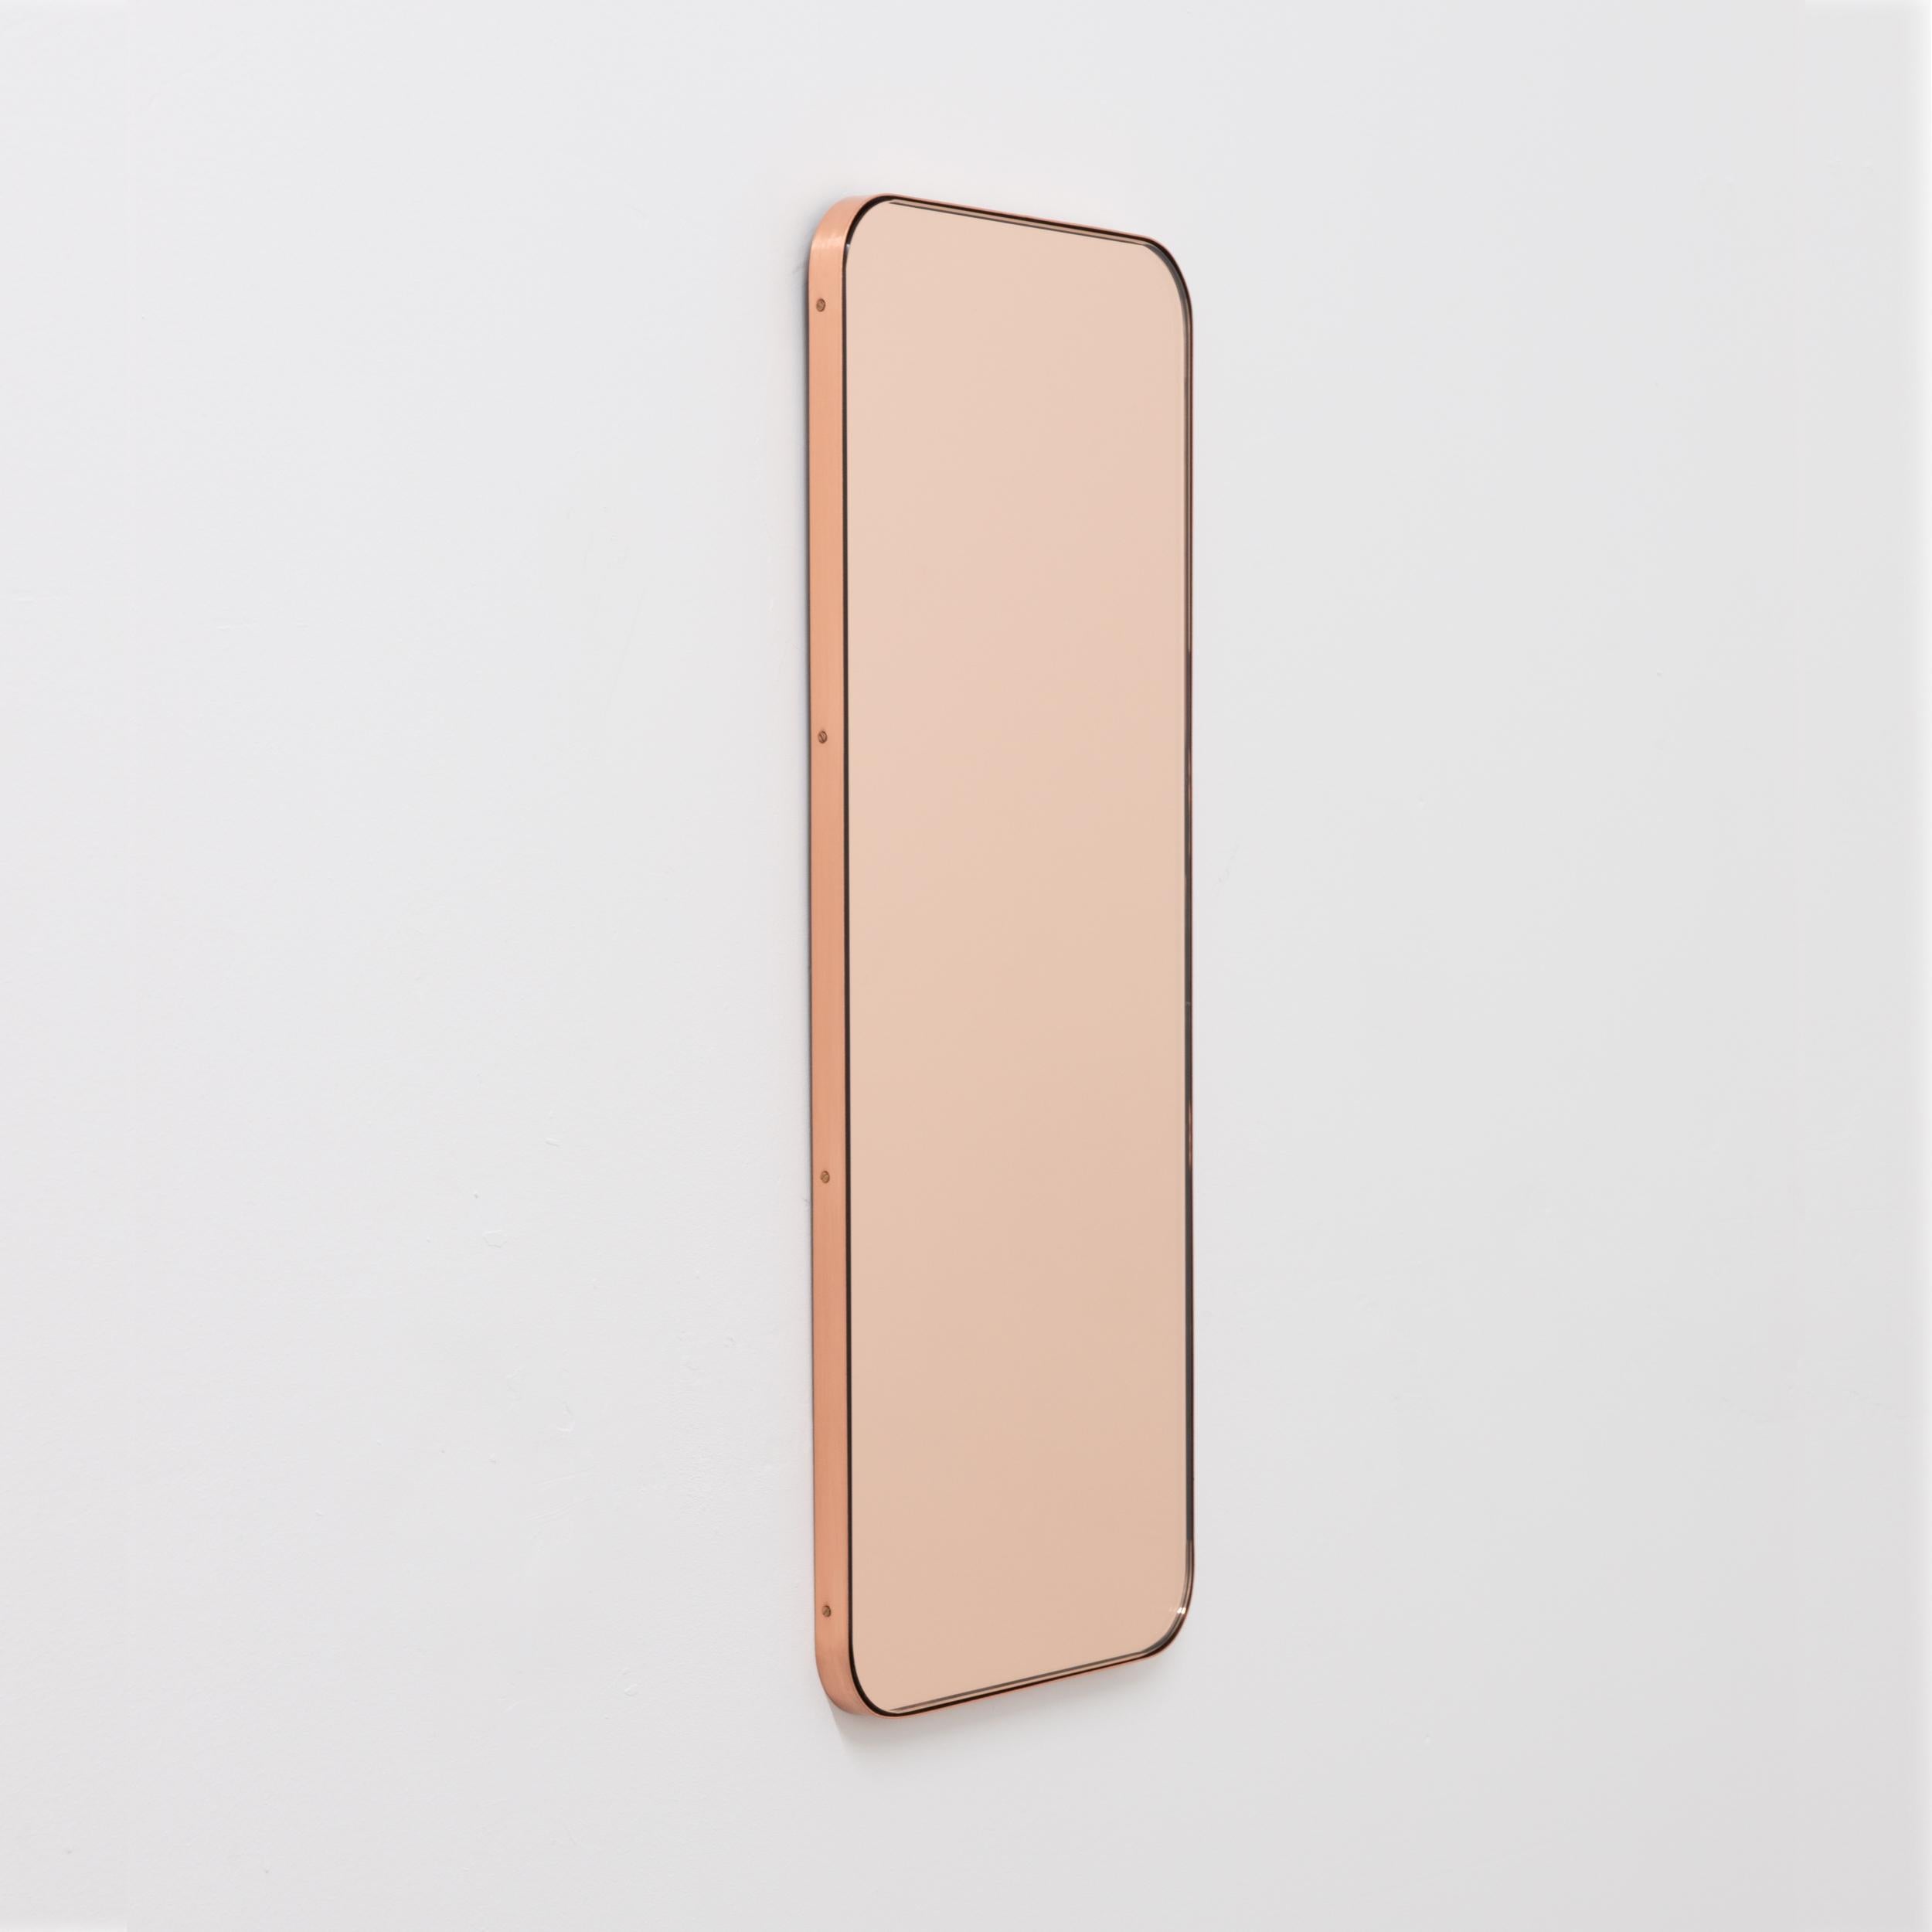 Miroir rectangulaire minimaliste avec un élégant cadre fin en cuivre brossé. Les détails et la finition, y compris les vis visibles plaquées cuivre, soulignent l'aspect artisanal et la qualité du miroir, véritable signature de notre marque. Conçu et